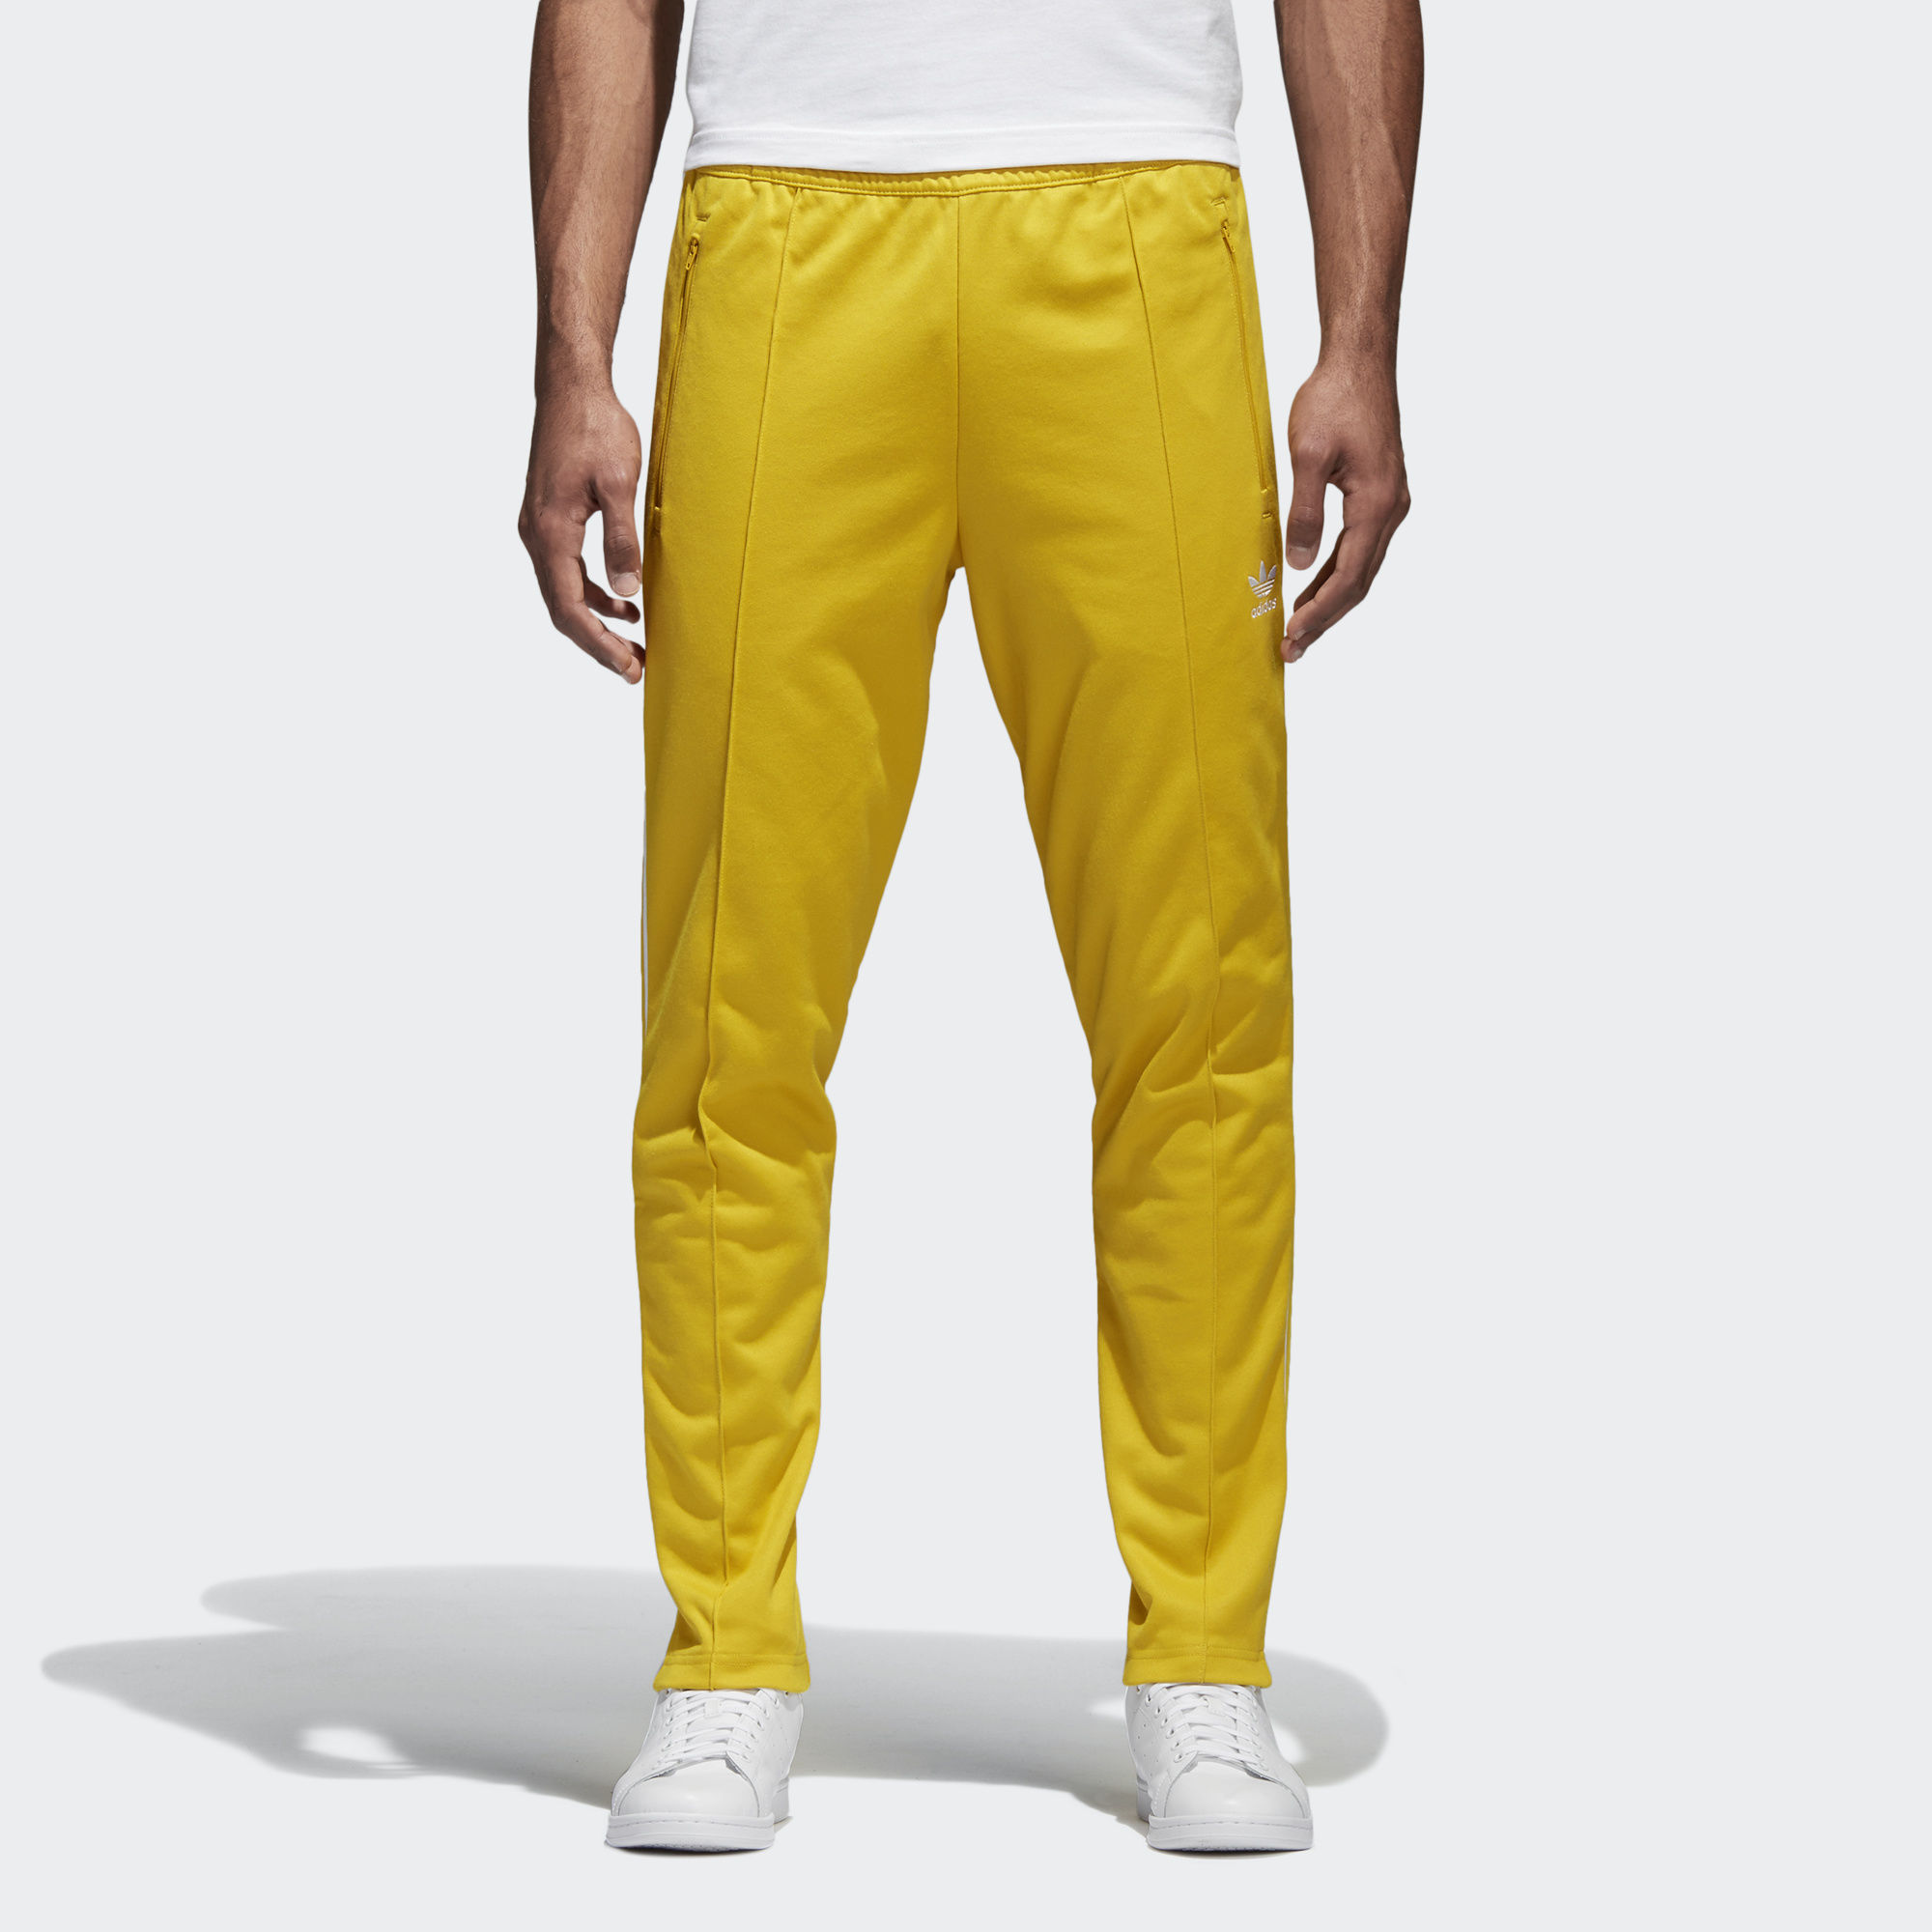 Желтые штаны мужские. Adidas Originals Beckenbauer штаны. Брюки adidas Originals Beckenbauer мужские. Жёлтые штаны адидас мужские. Штаны adidas Originals мужские жёлтые.